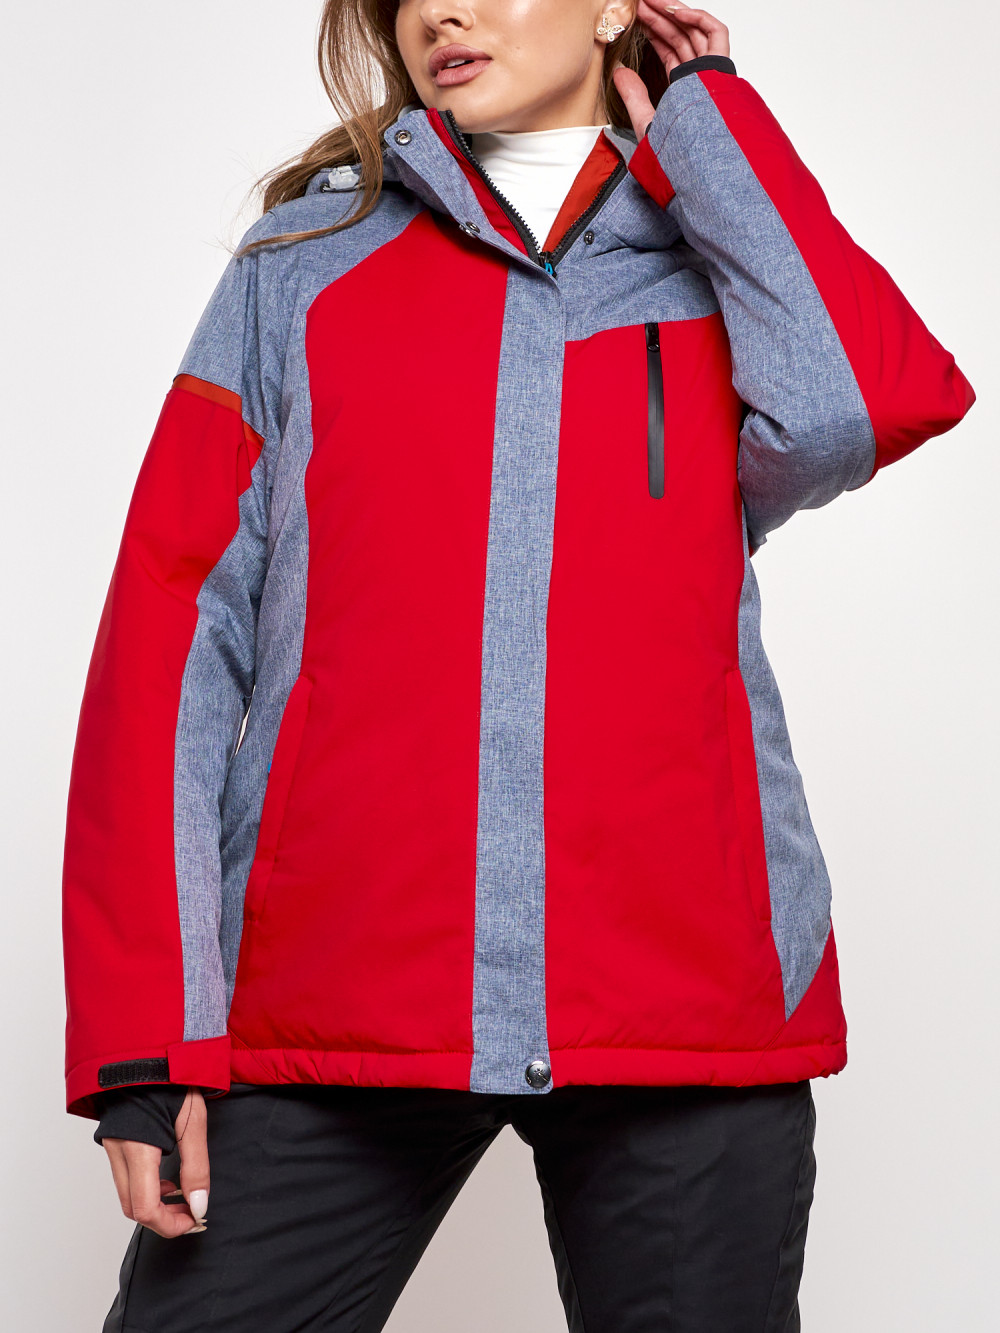 Горнолыжная куртка женская зимняя большого размера Chunmai AD2272-3Kr, 54